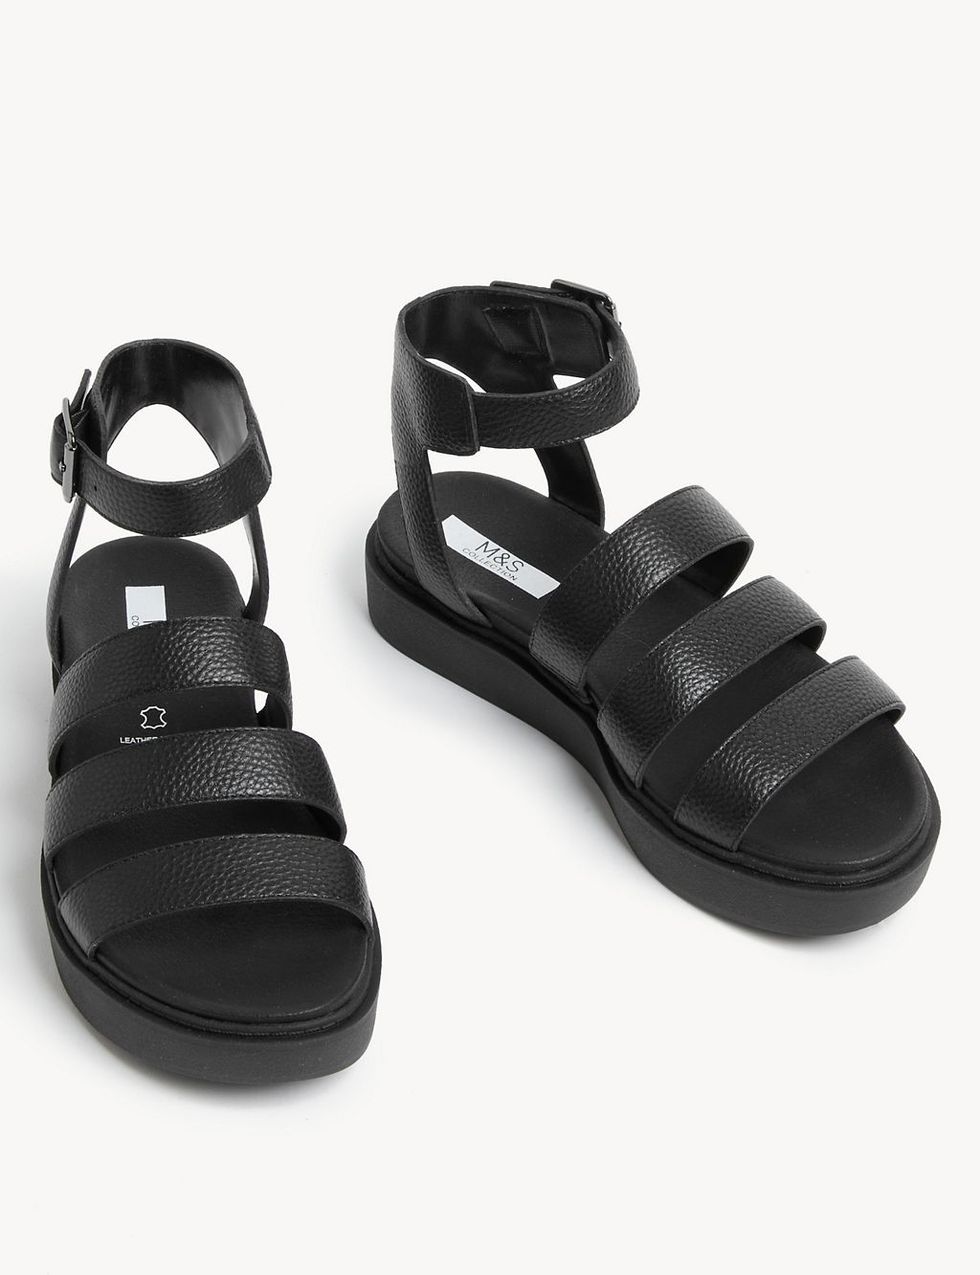 Best Flat Sandals UK - Summer Trend 2020